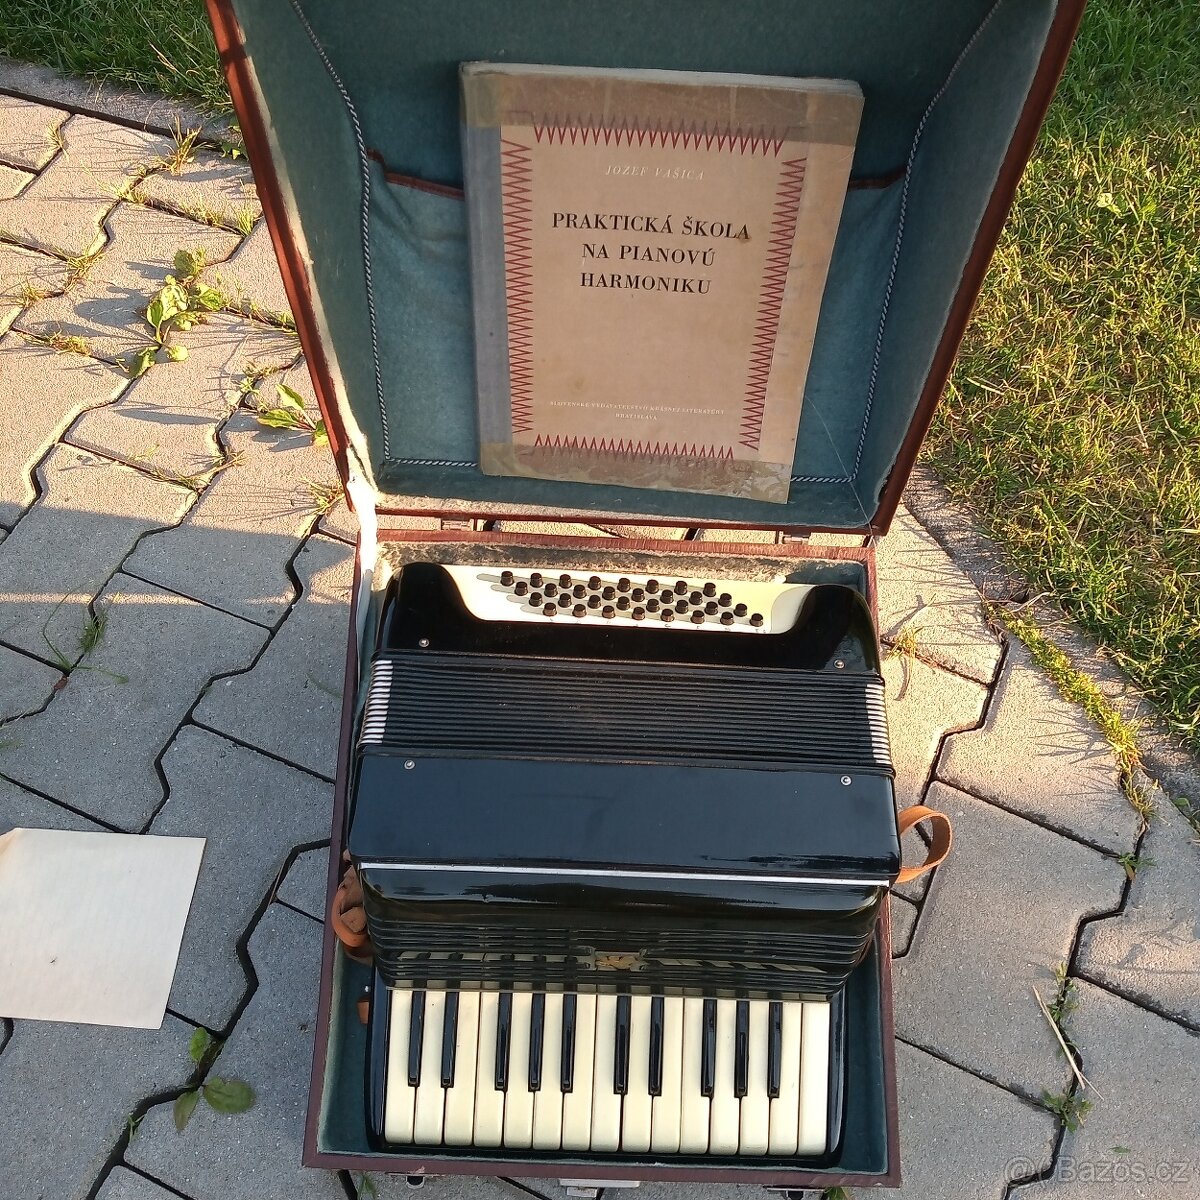 Prodam pianovou harmoniku